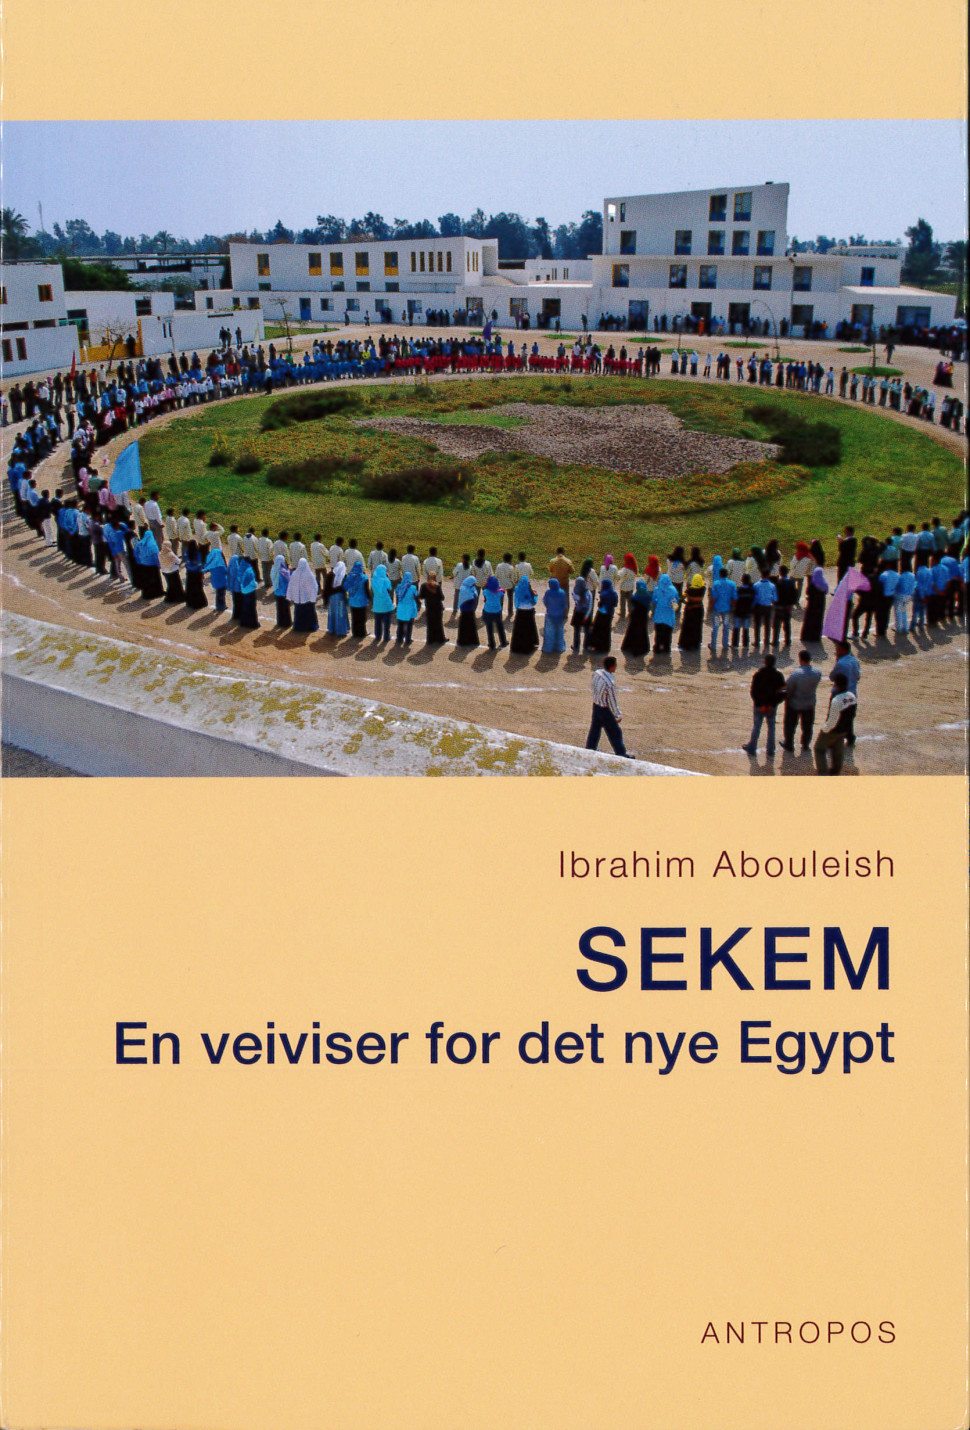 Forside av boken SEKEM. Mennesker i ring rundt en grønn plass.